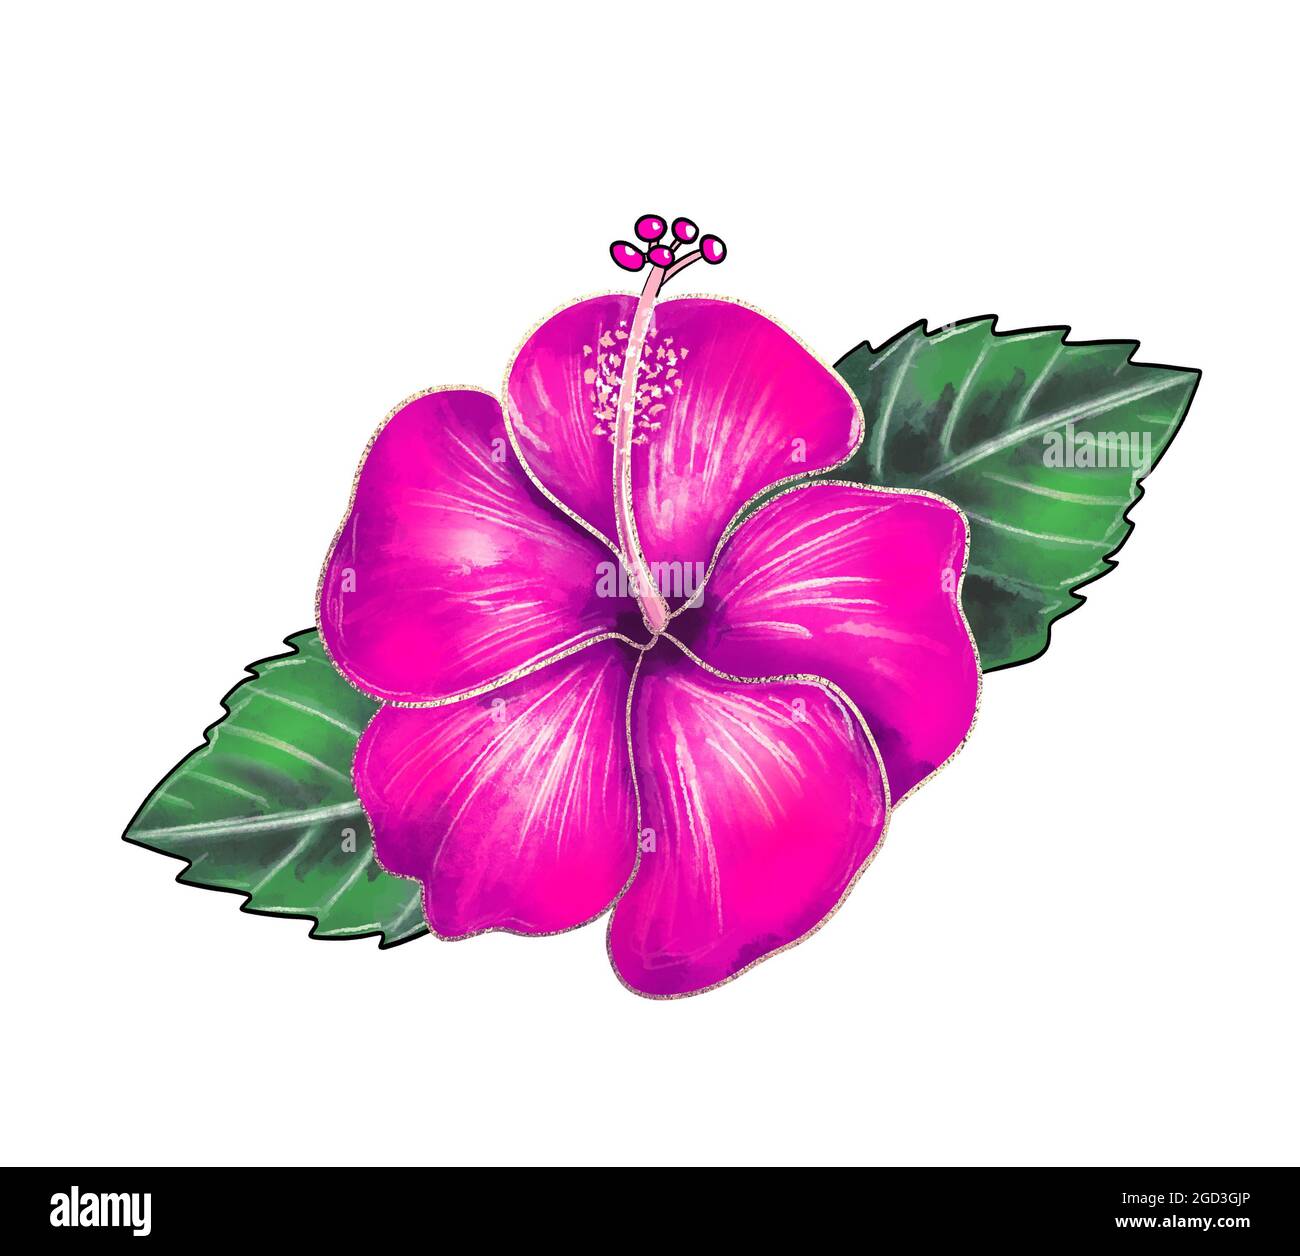 Illustration d'un dessin coloré de fleurs d'hibiscus gros plan de lilas avec des feuilles vertes sur fond blanc isolé. Illustration de haute qualité Banque D'Images